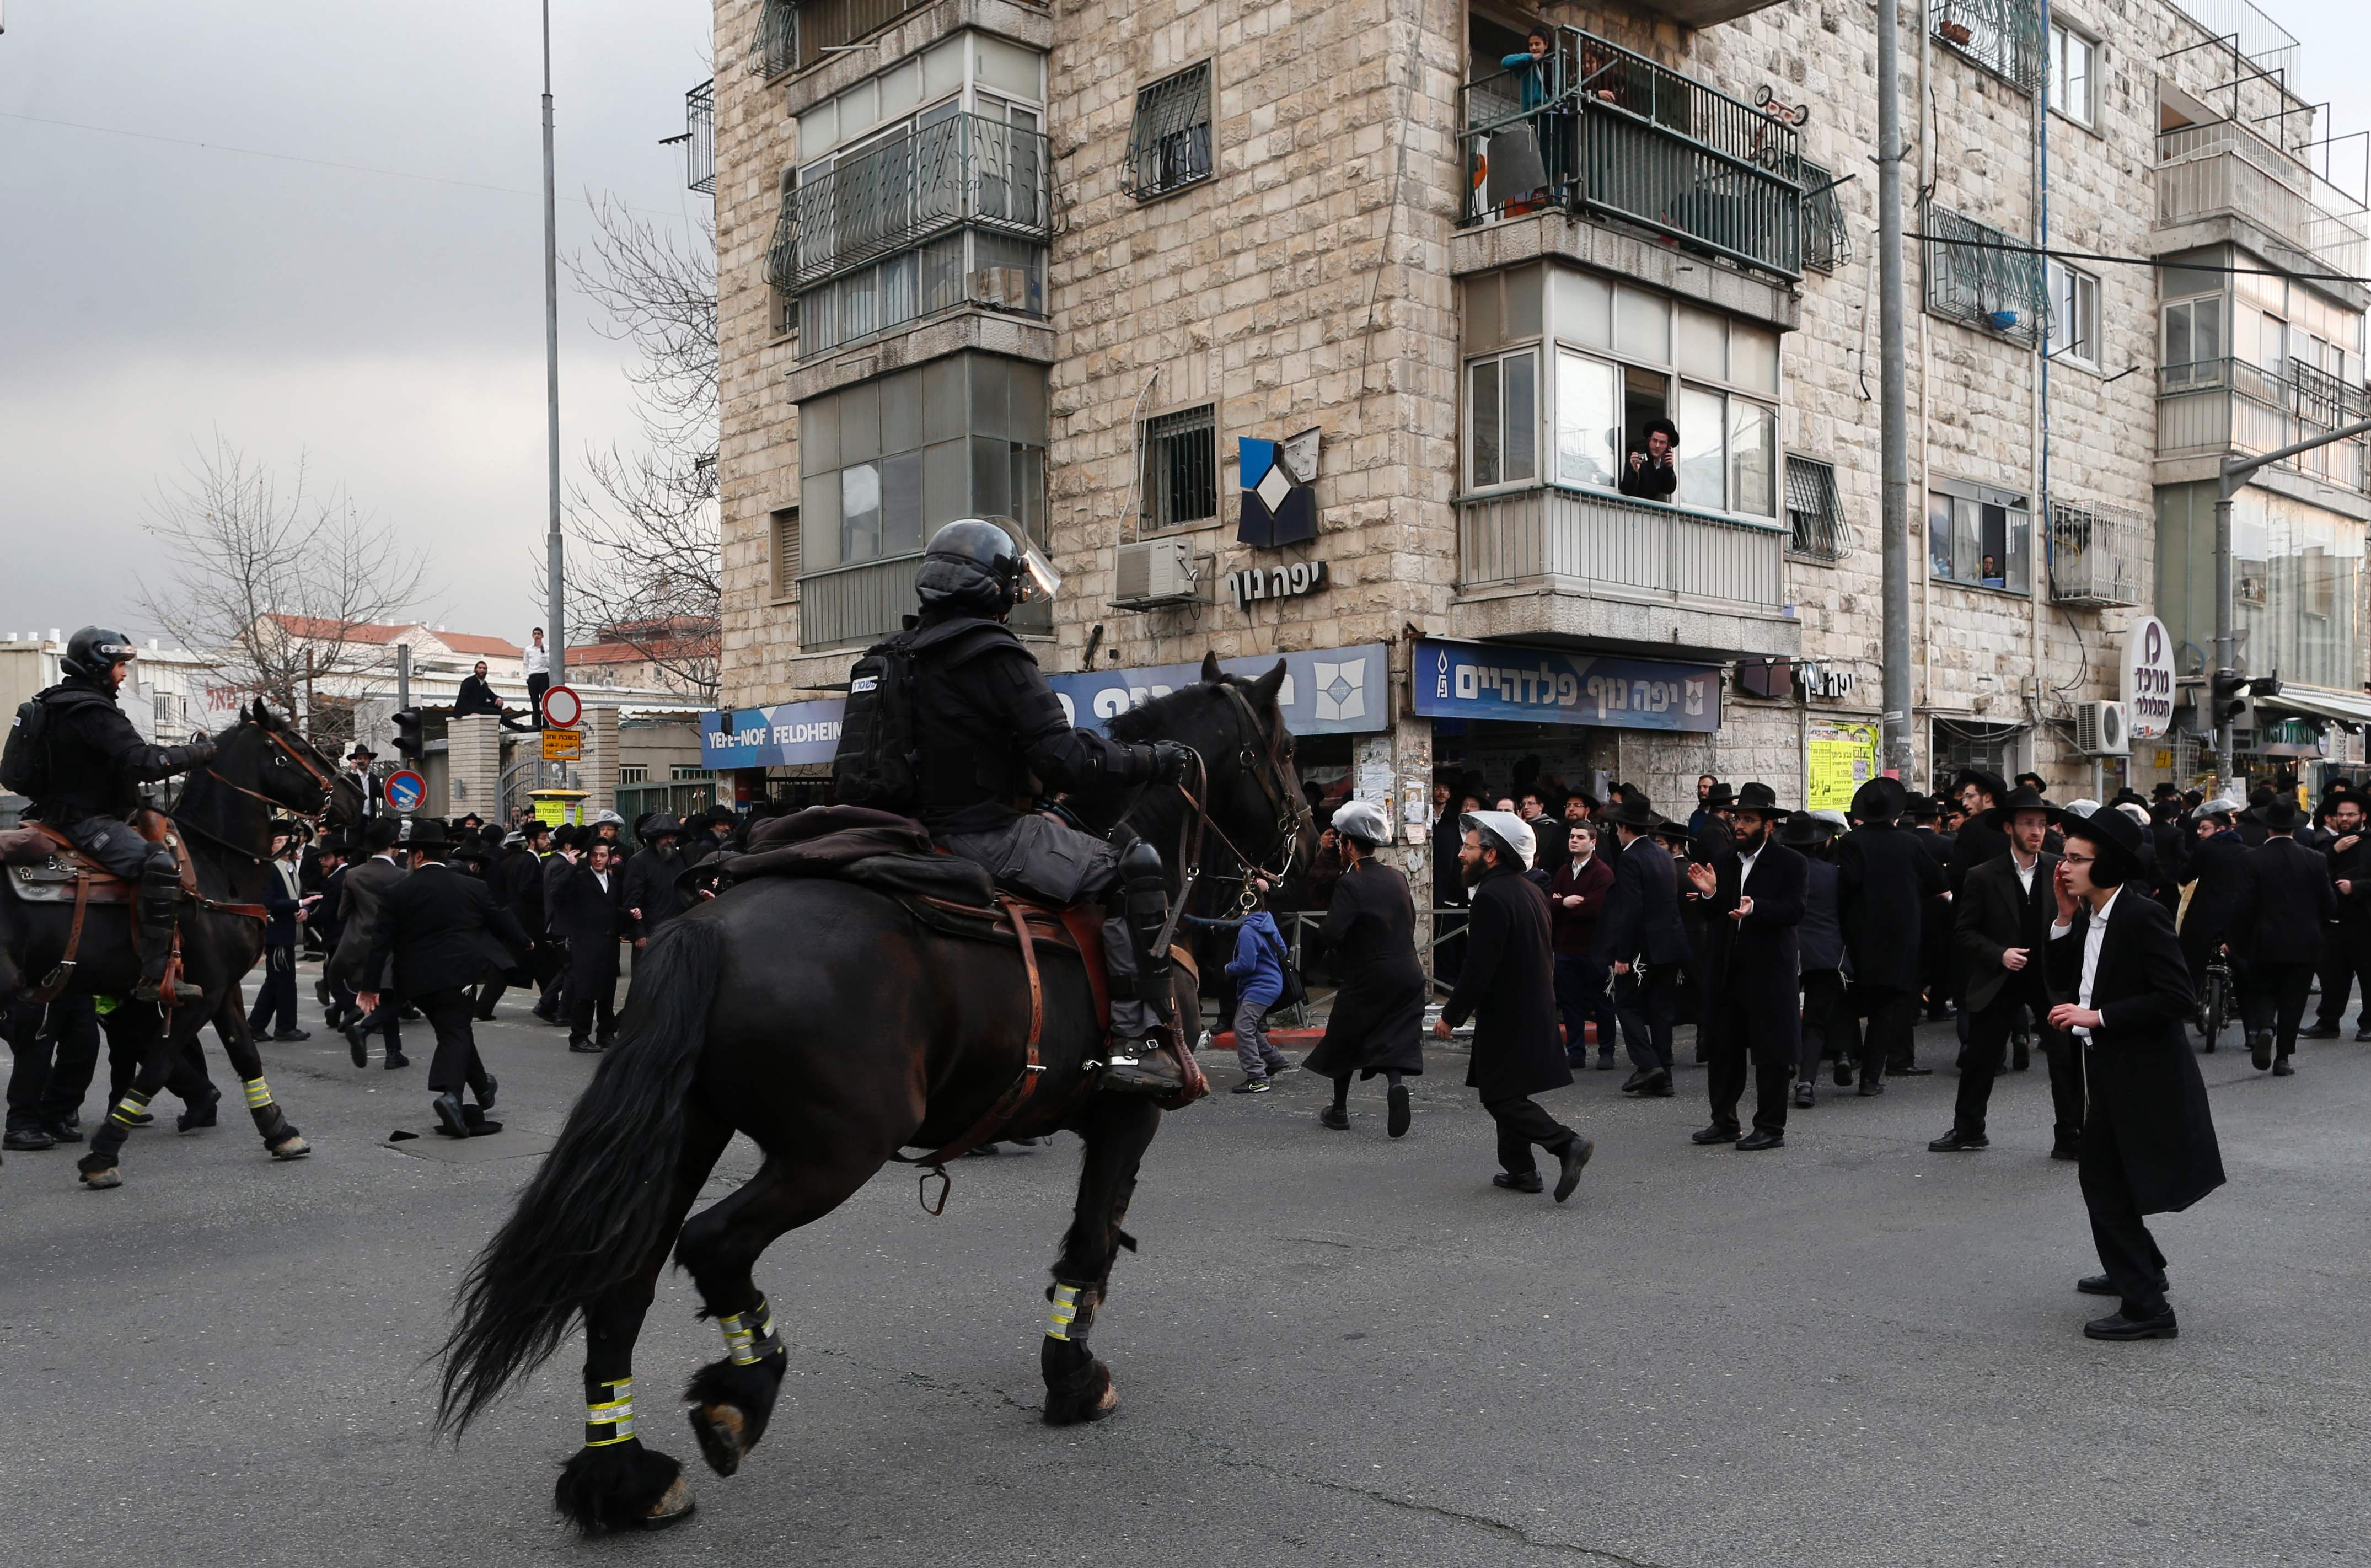 يهود متشددين يقطعون الطريق اعتراضا على قرار الحكومة بالتجنيد